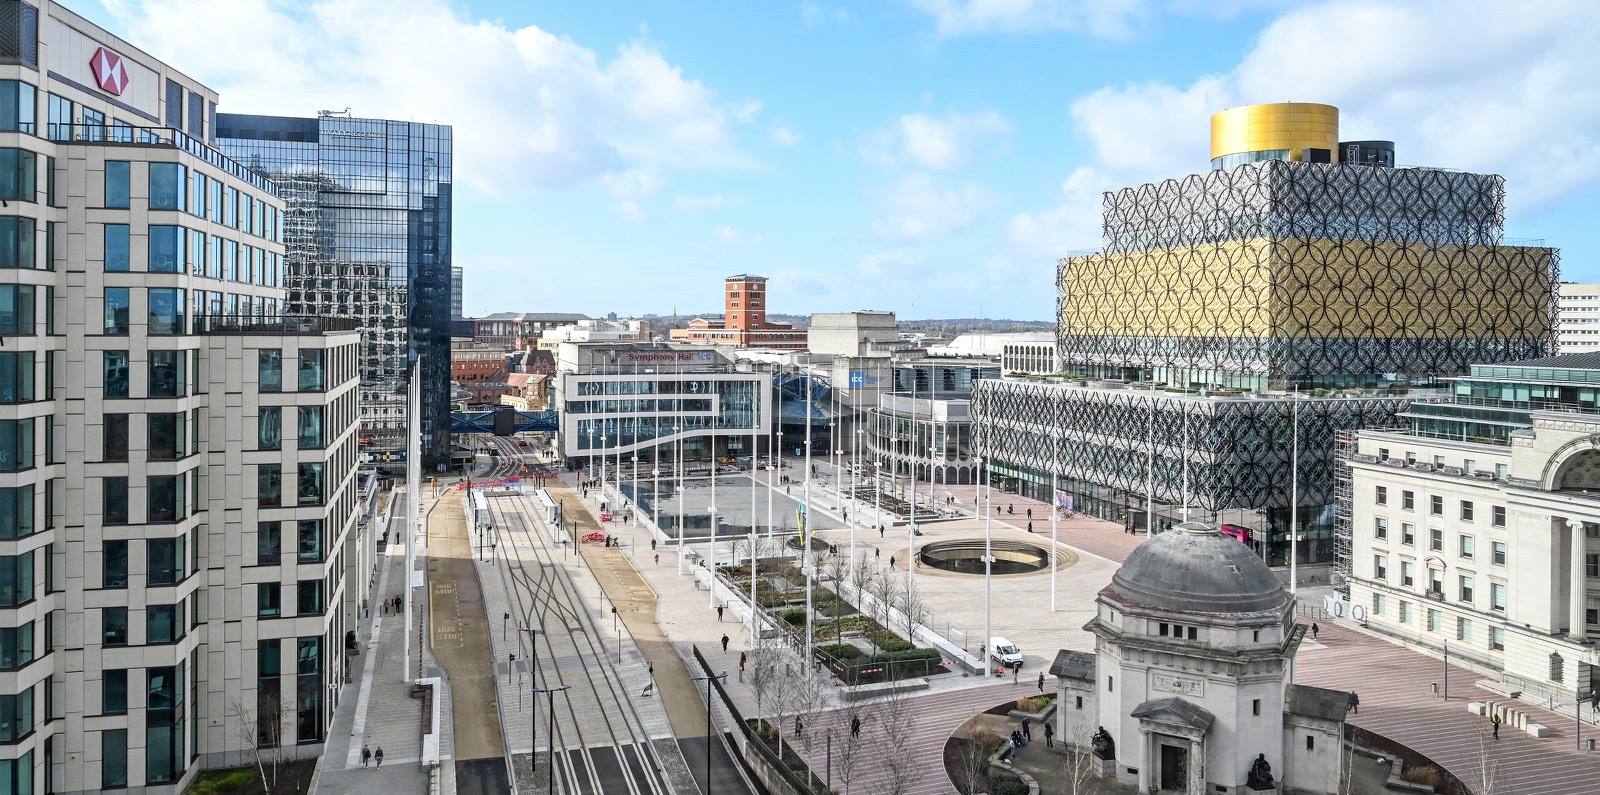 Centenary Square and Arena Central, Birmingham.